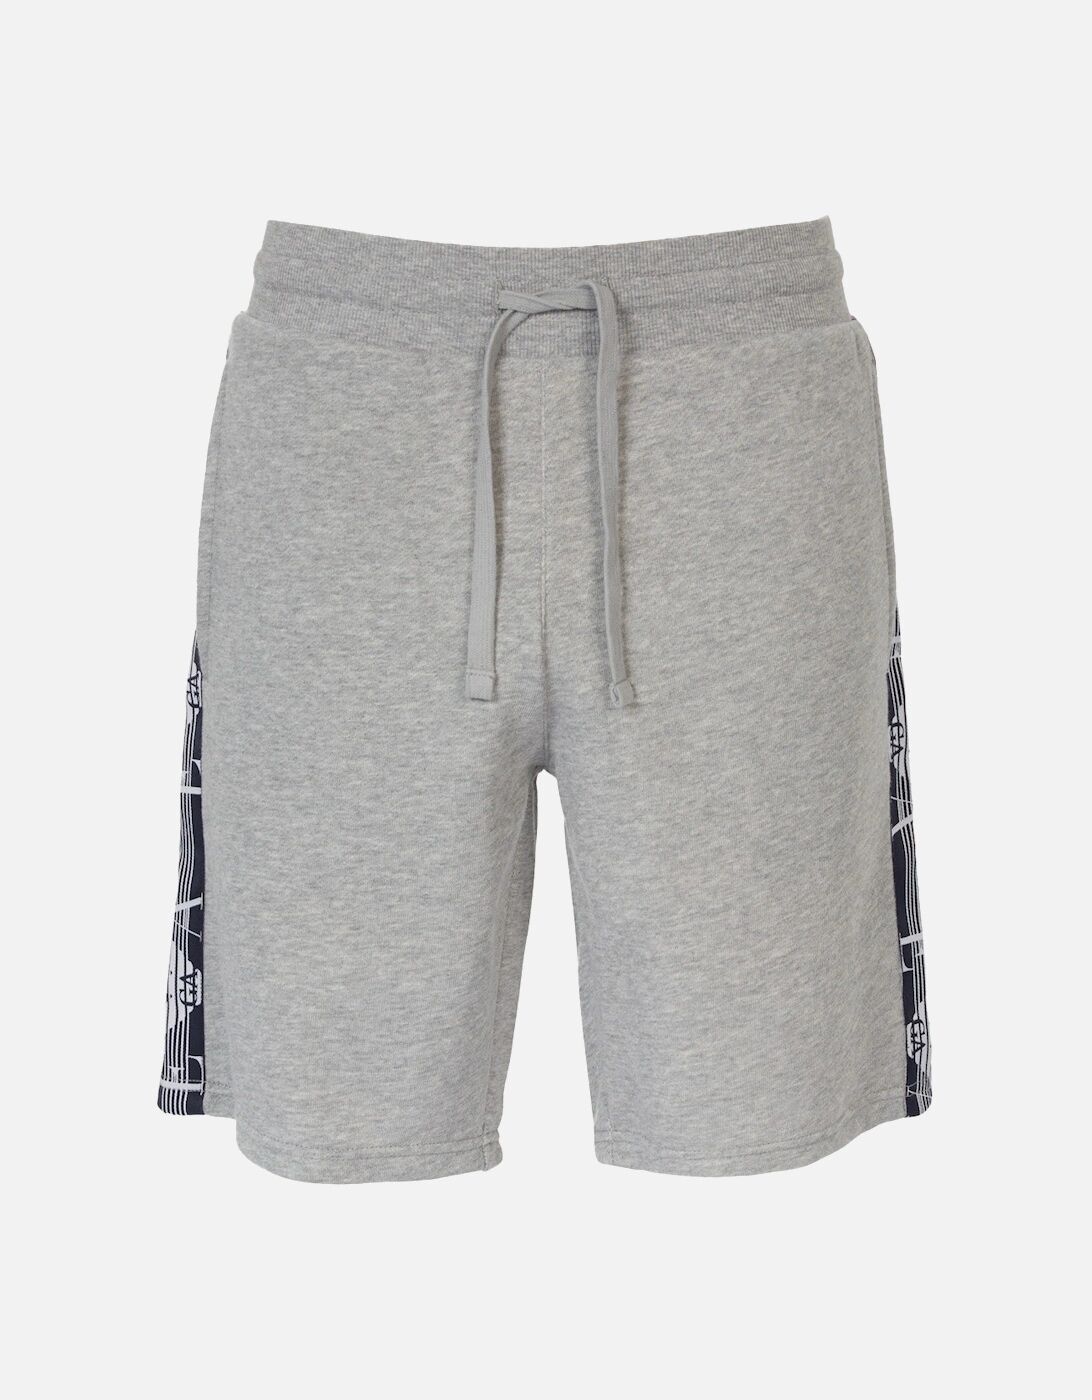 Men's Emporio Armani Underwear Mens Side Logo Shorts (Grey) - Size: S